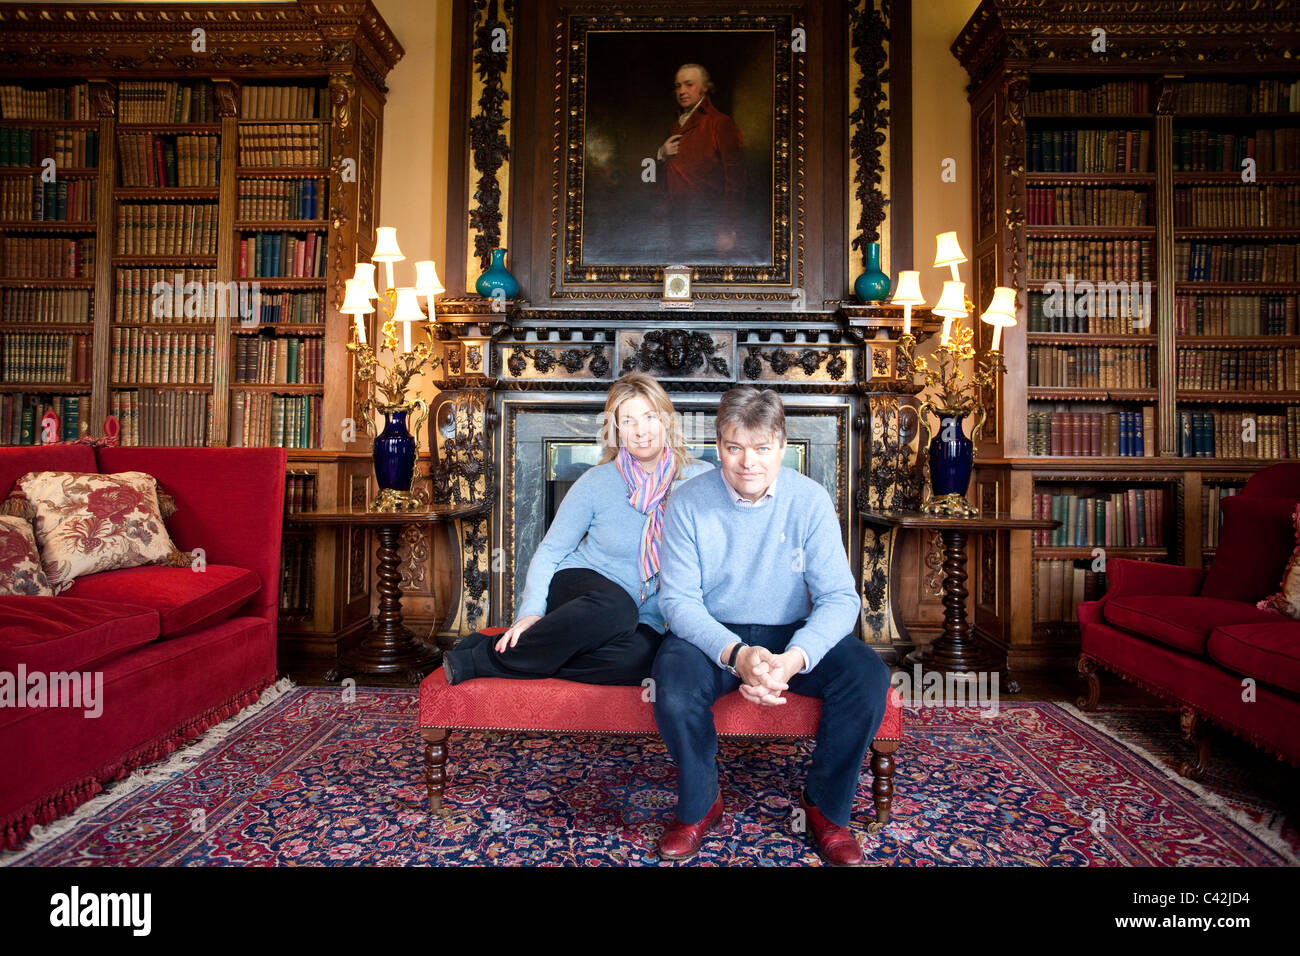 Lord et Lady Carnarvon, la bibliothèque double, Château de Highclere, Newbury, Berkshire, Angleterre, Royaume-Uni. Photo:Jeff Gilbert Banque D'Images